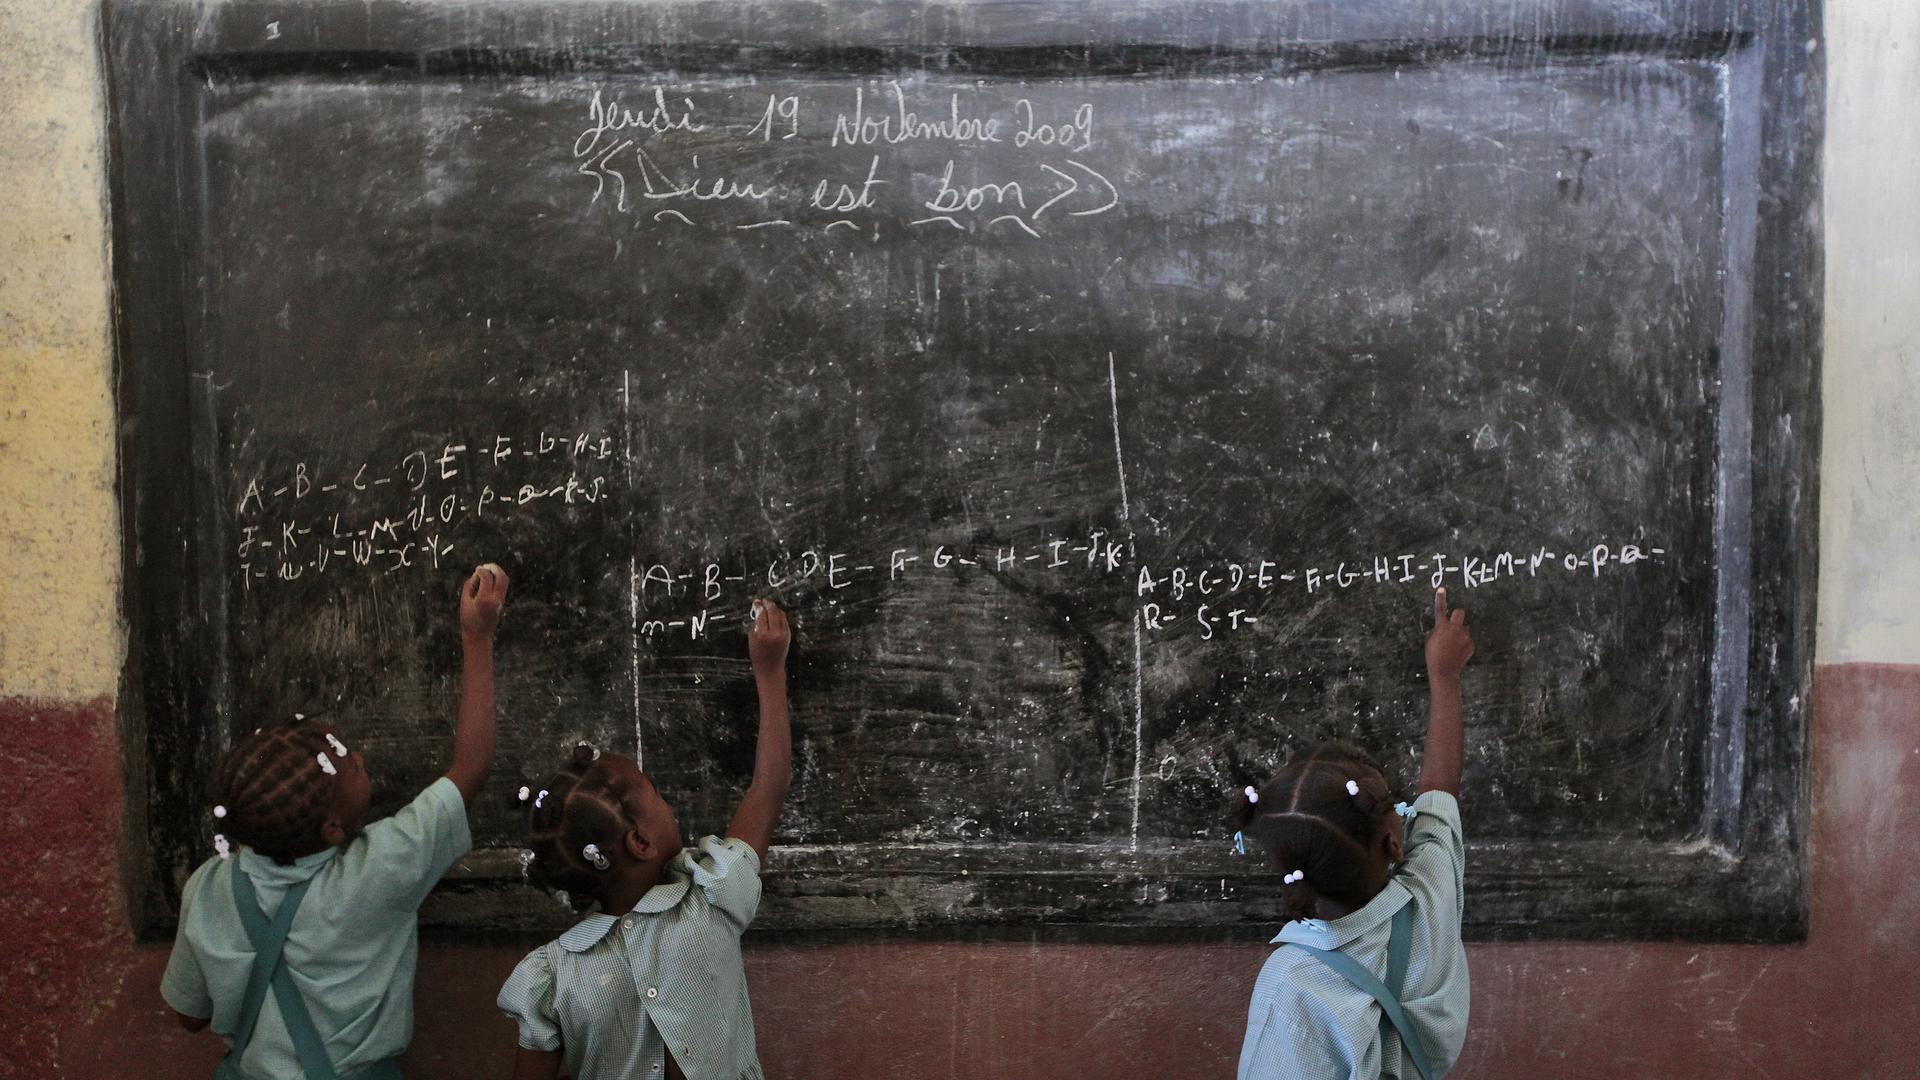 Esta foto de uma escola no Haiti valeu um artigo inteiro no New York Times.